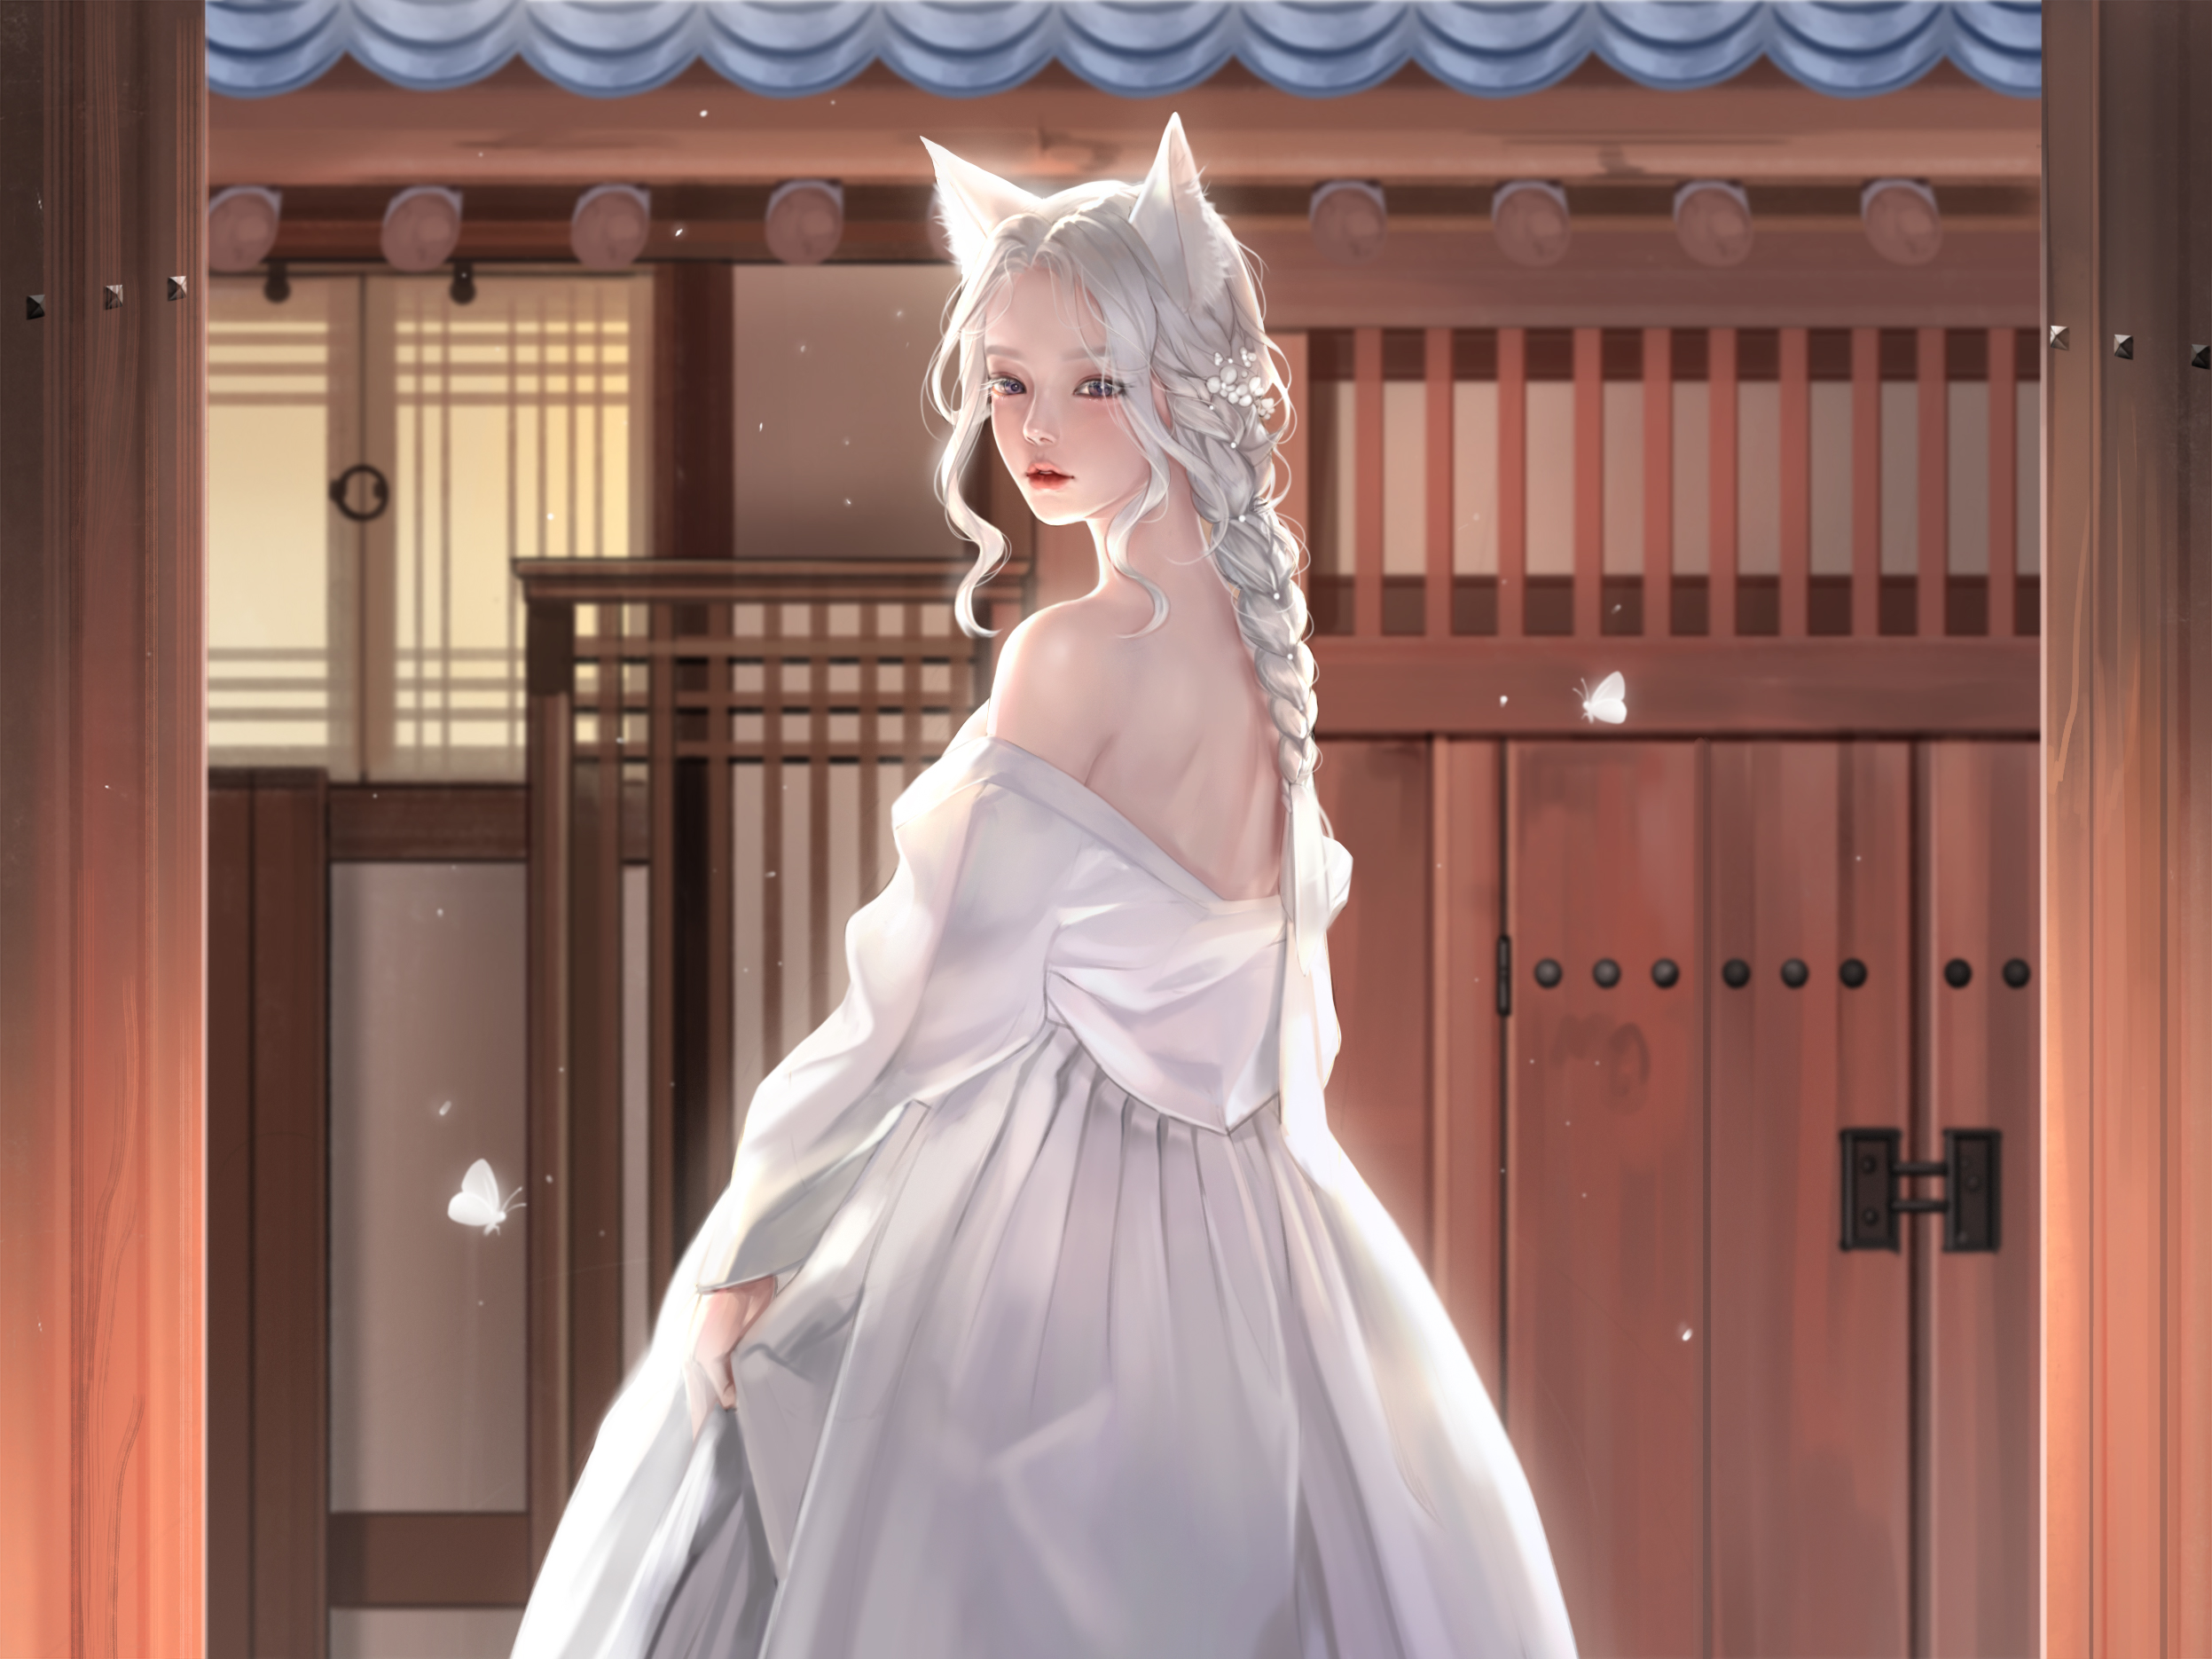 General 2494x1870 Kangagi97 women fox girl fantasy girl white hair fox ears dress white dress artwork fan art digital art